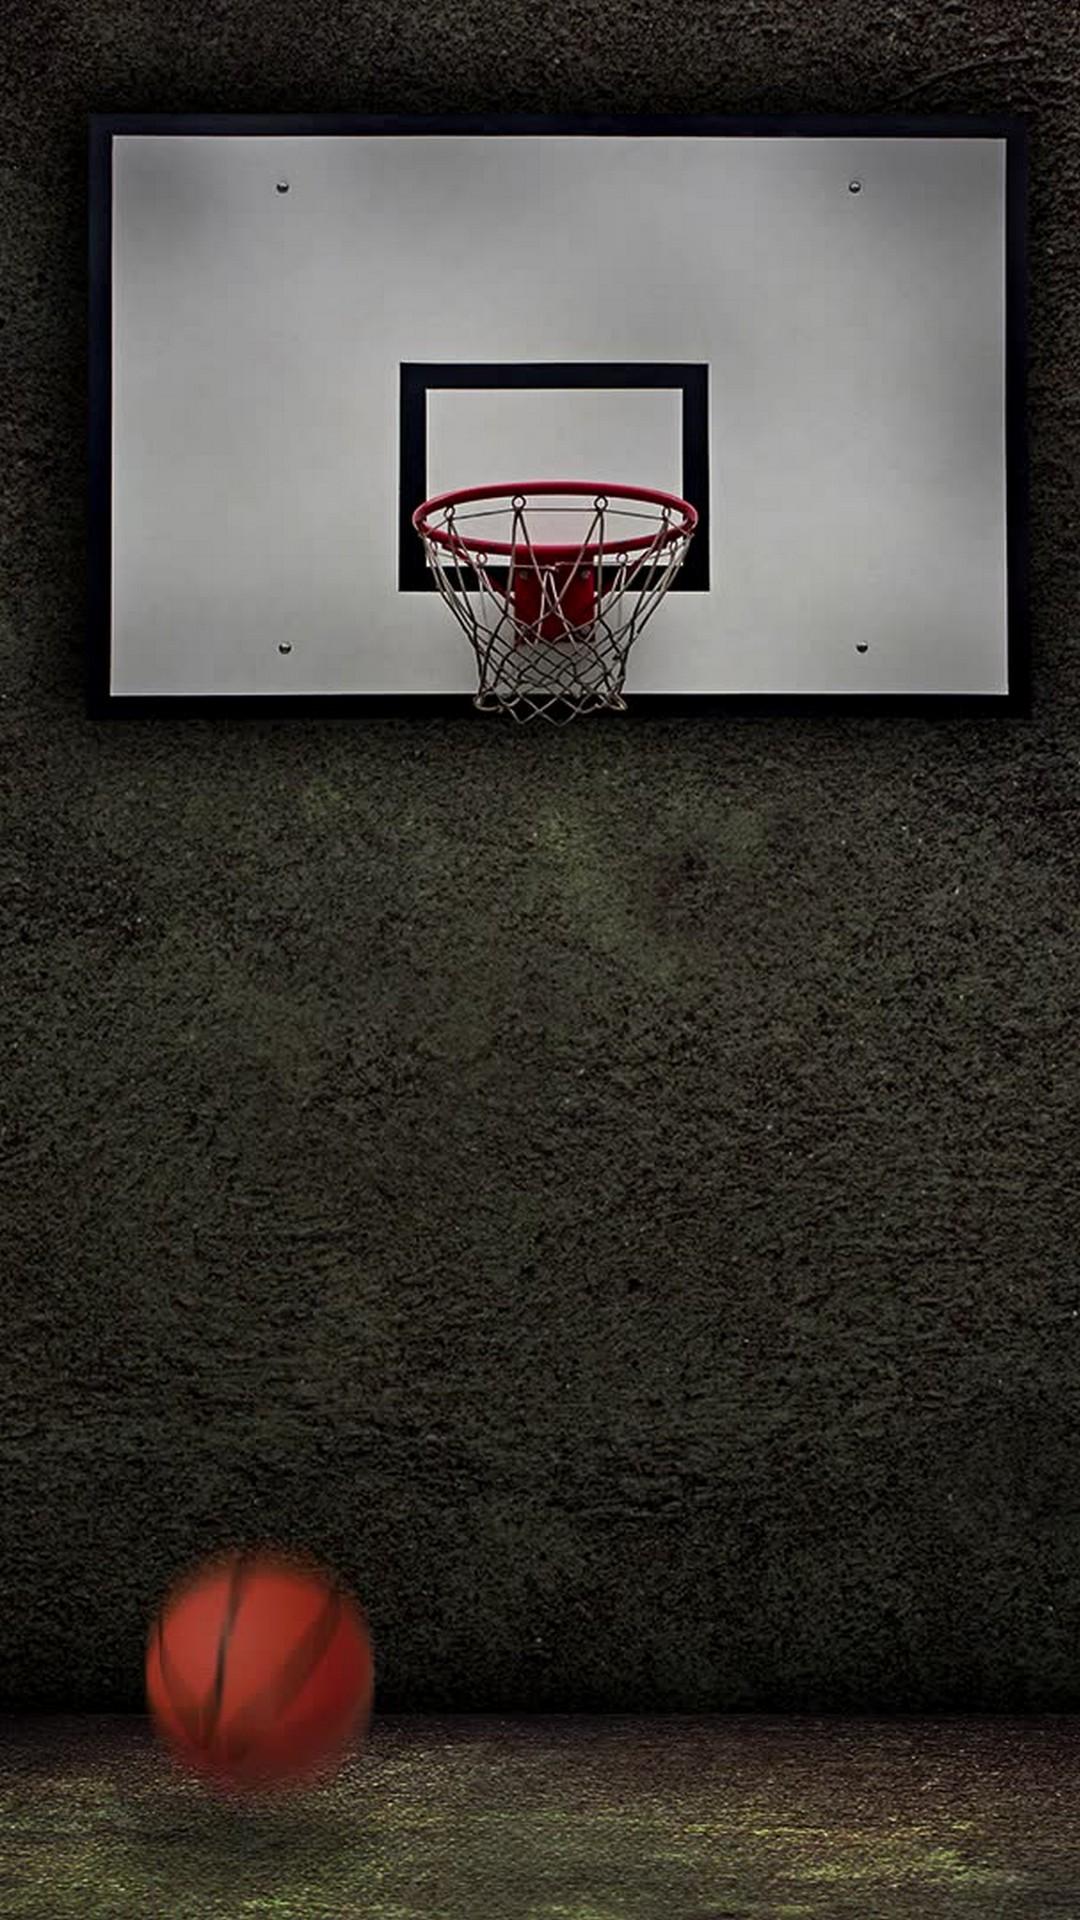 1080 x 1920 · jpeg - NBA Basketball Wallpaper iPhone HD | 2021 Basketball Wallpaper